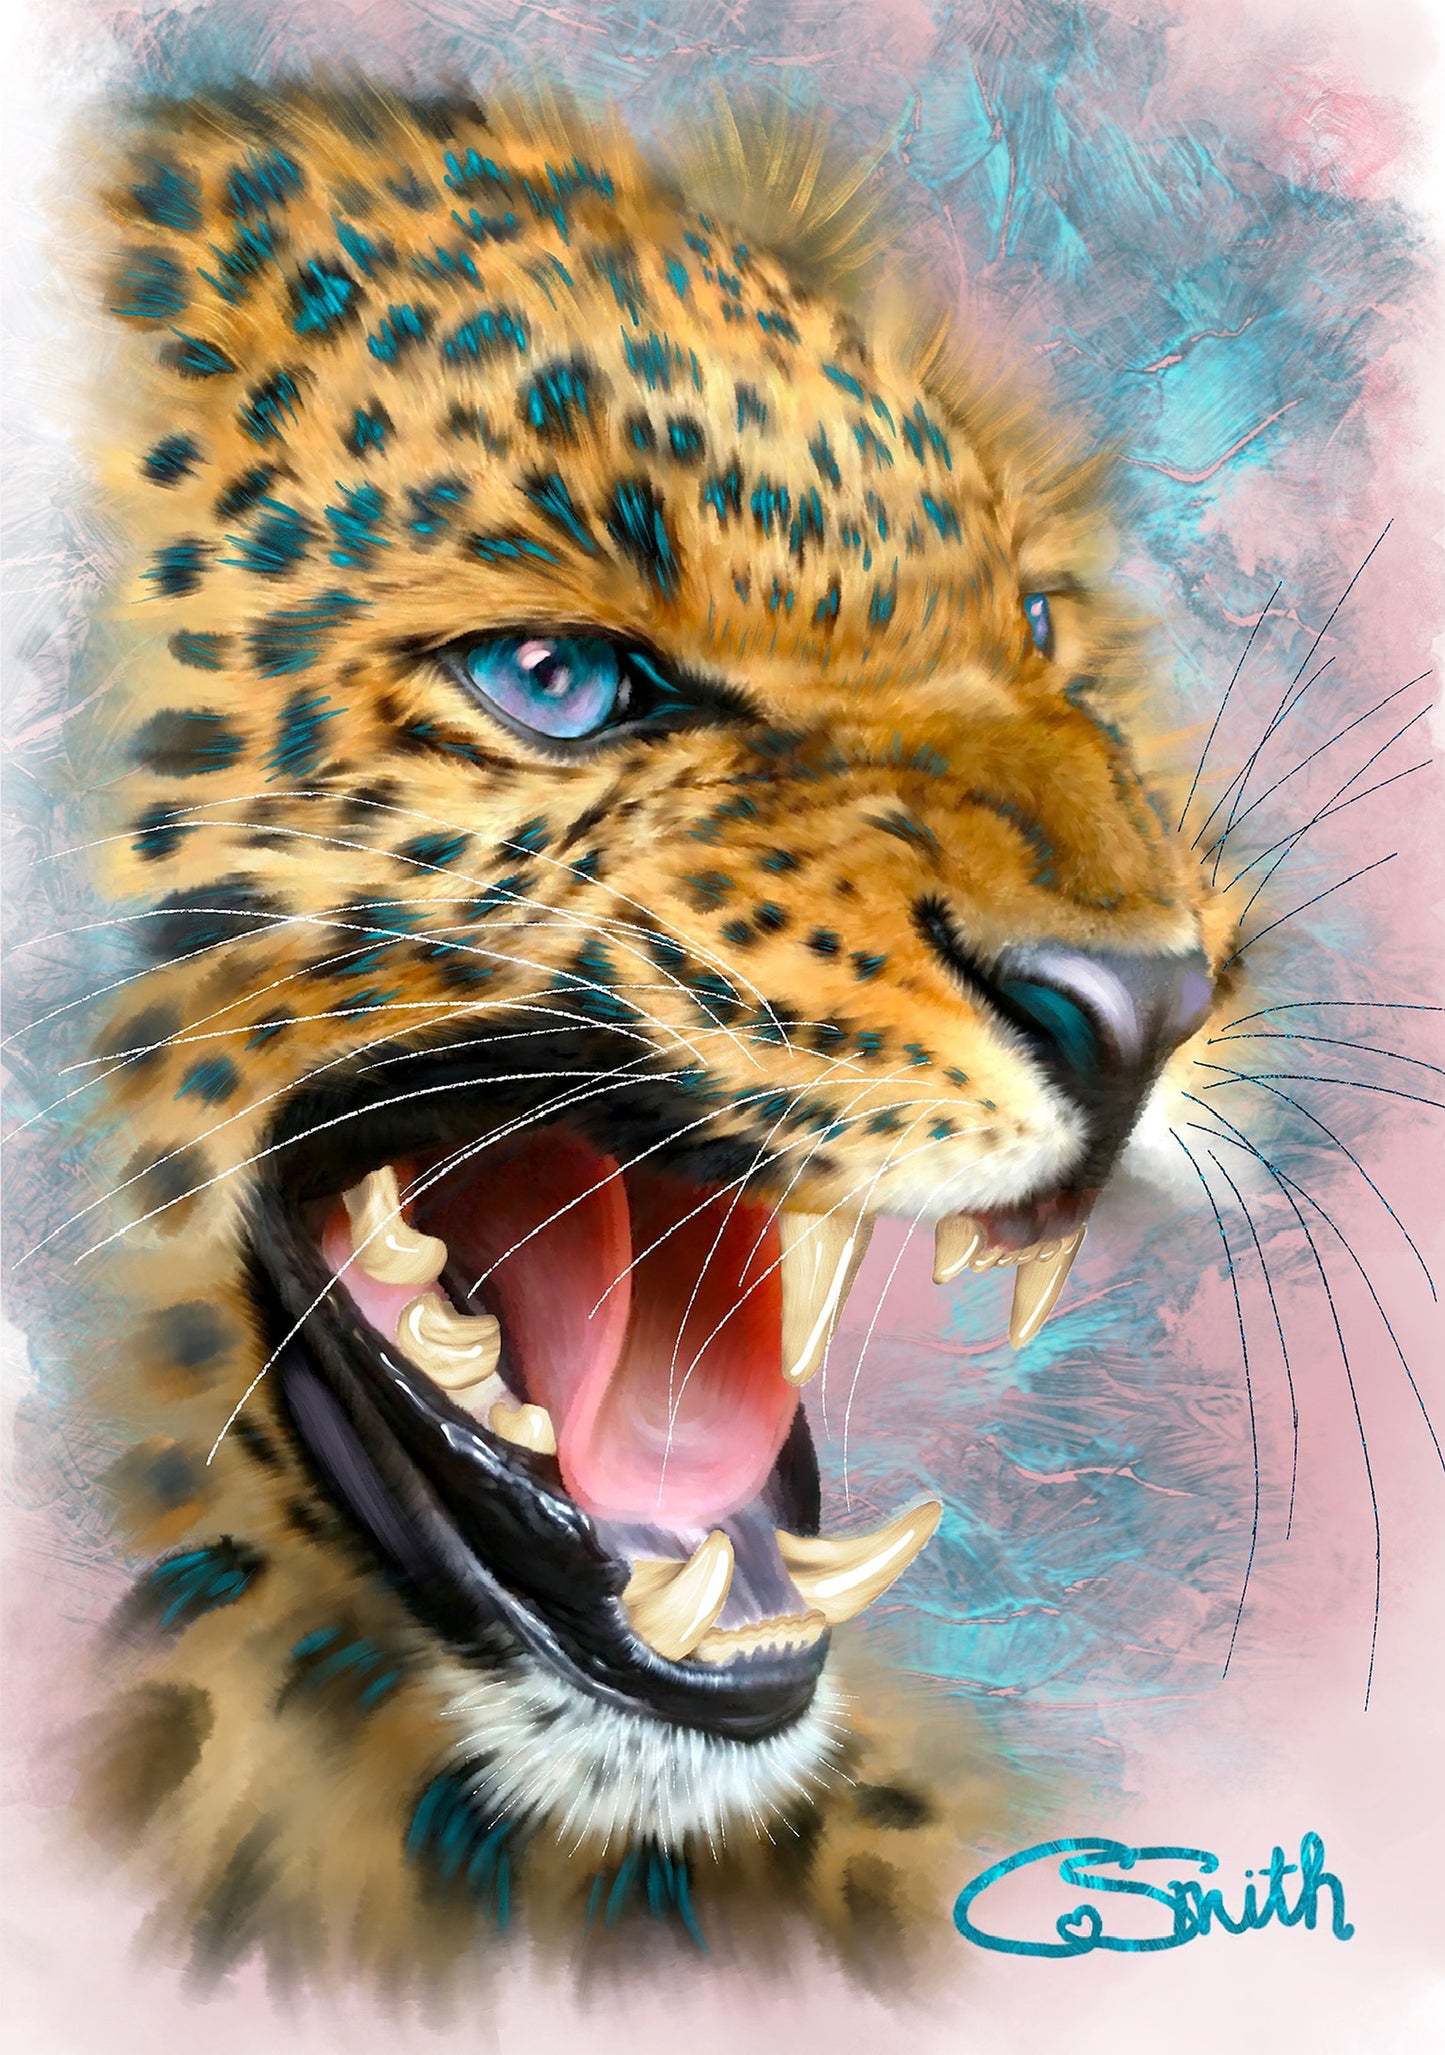 Wildlife Wild Animal Art Leopard Framed Print 14" x 11" (Matte Black or White Frame) Gift Idea